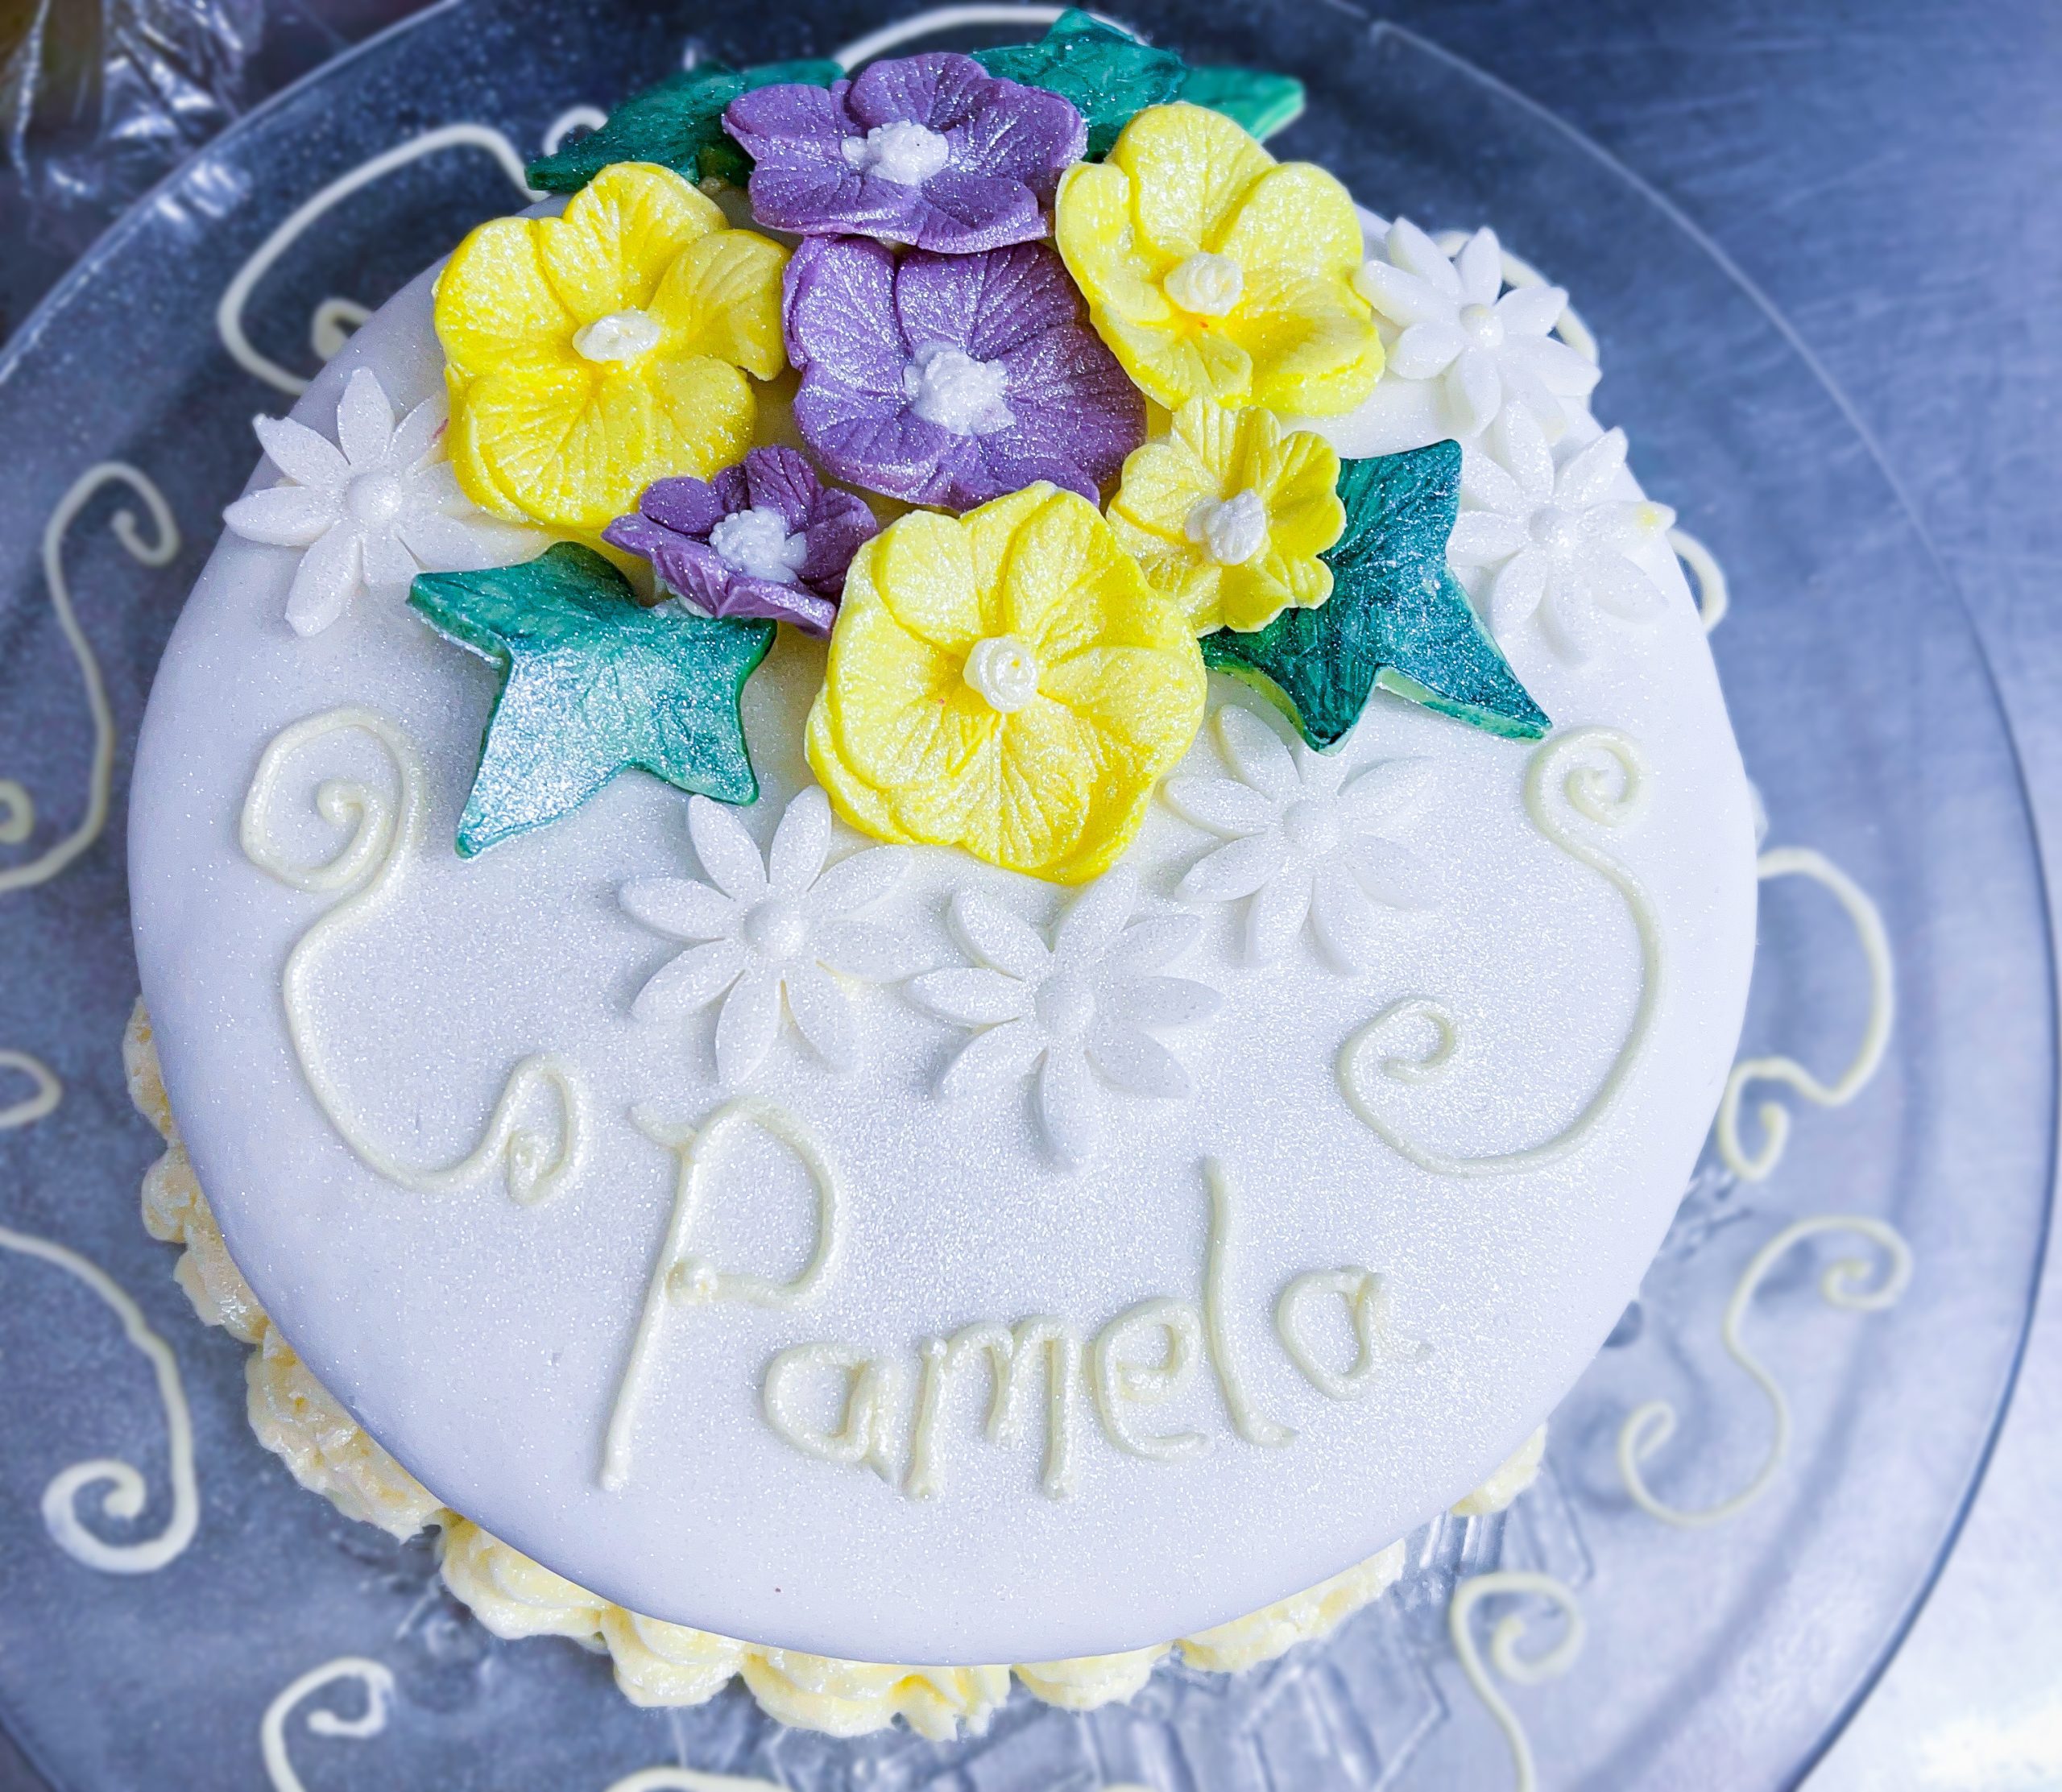 Pamela's birthday cake